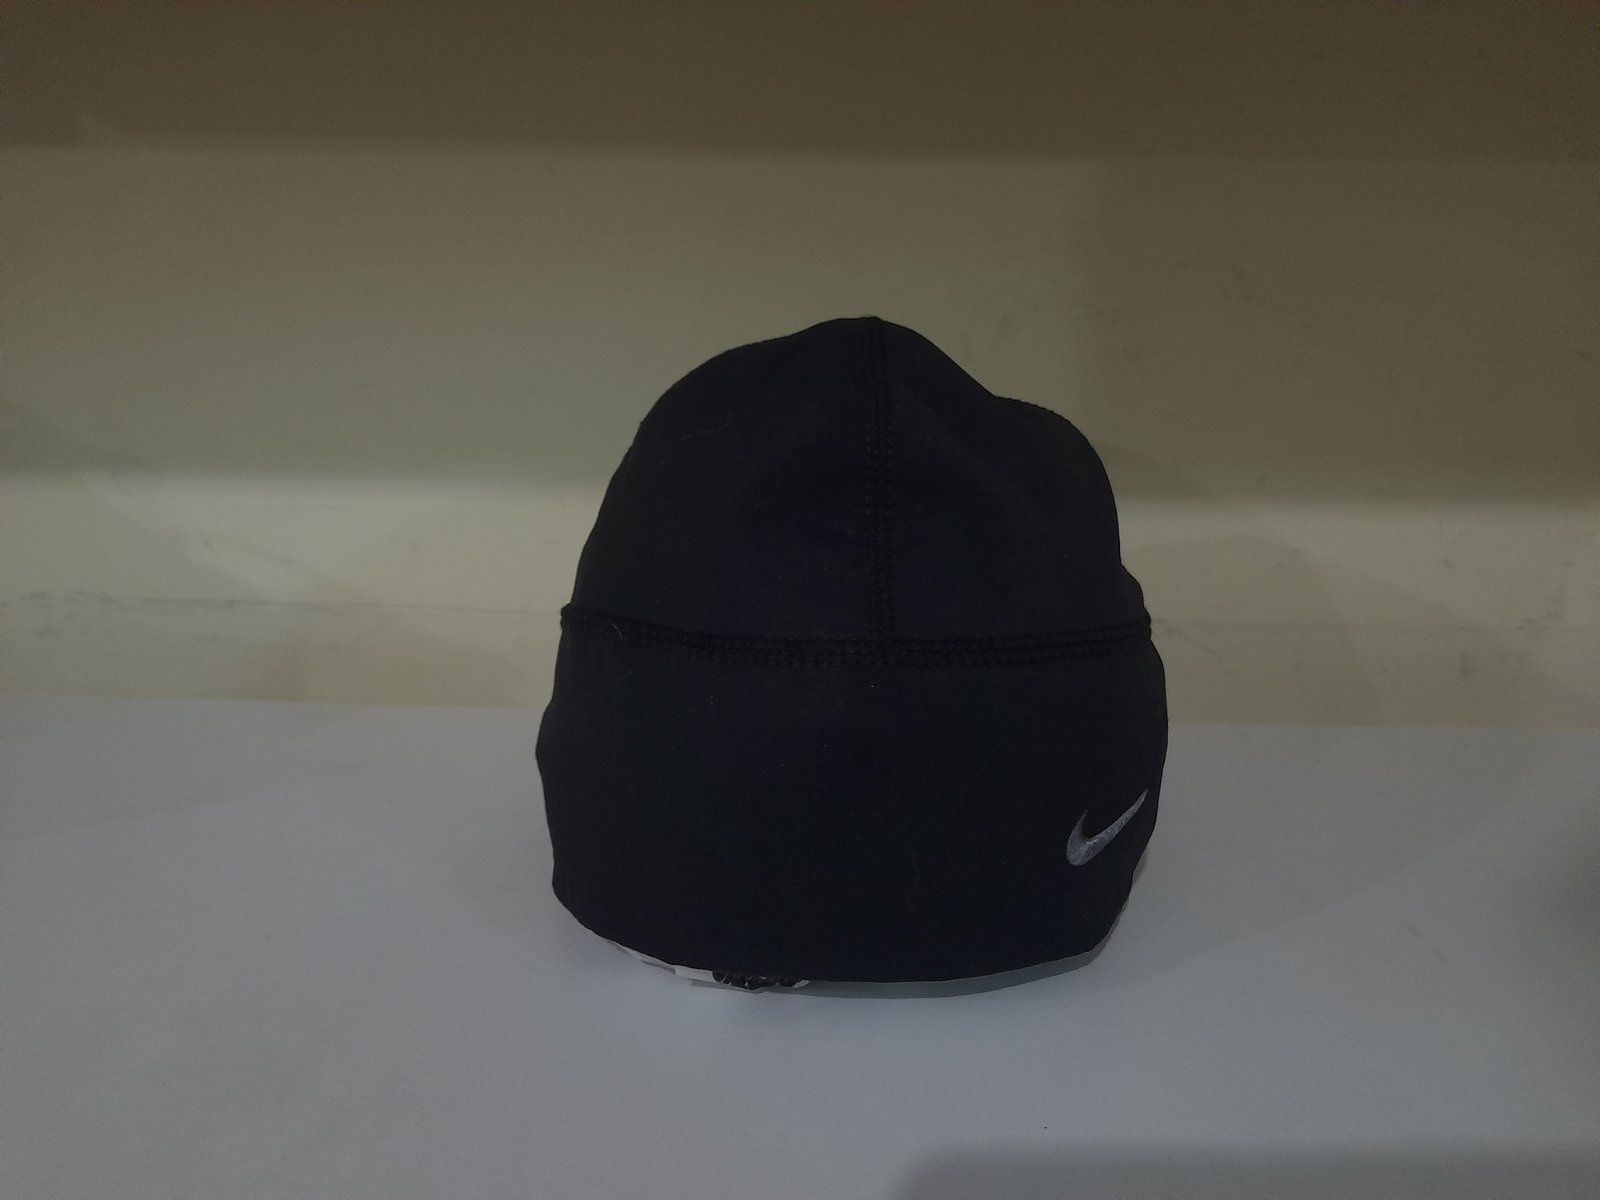 Оригинал Nike спортиная шапка черная унисекс идеал